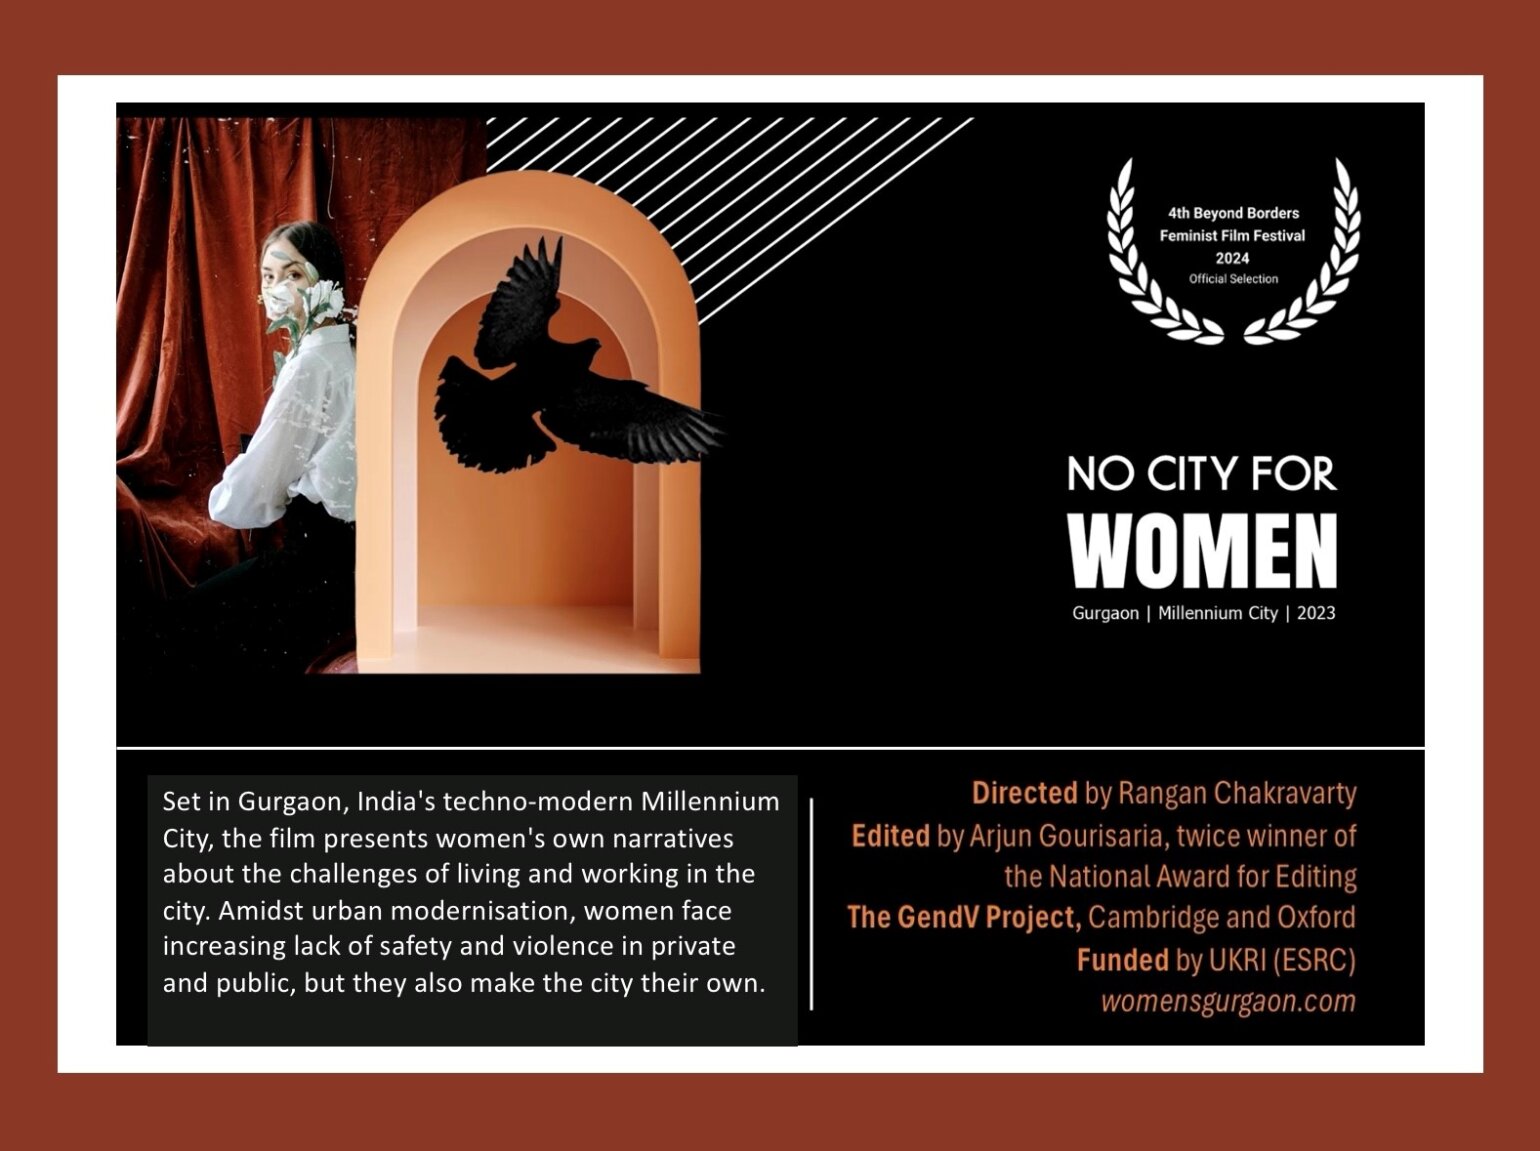 No City for Women film